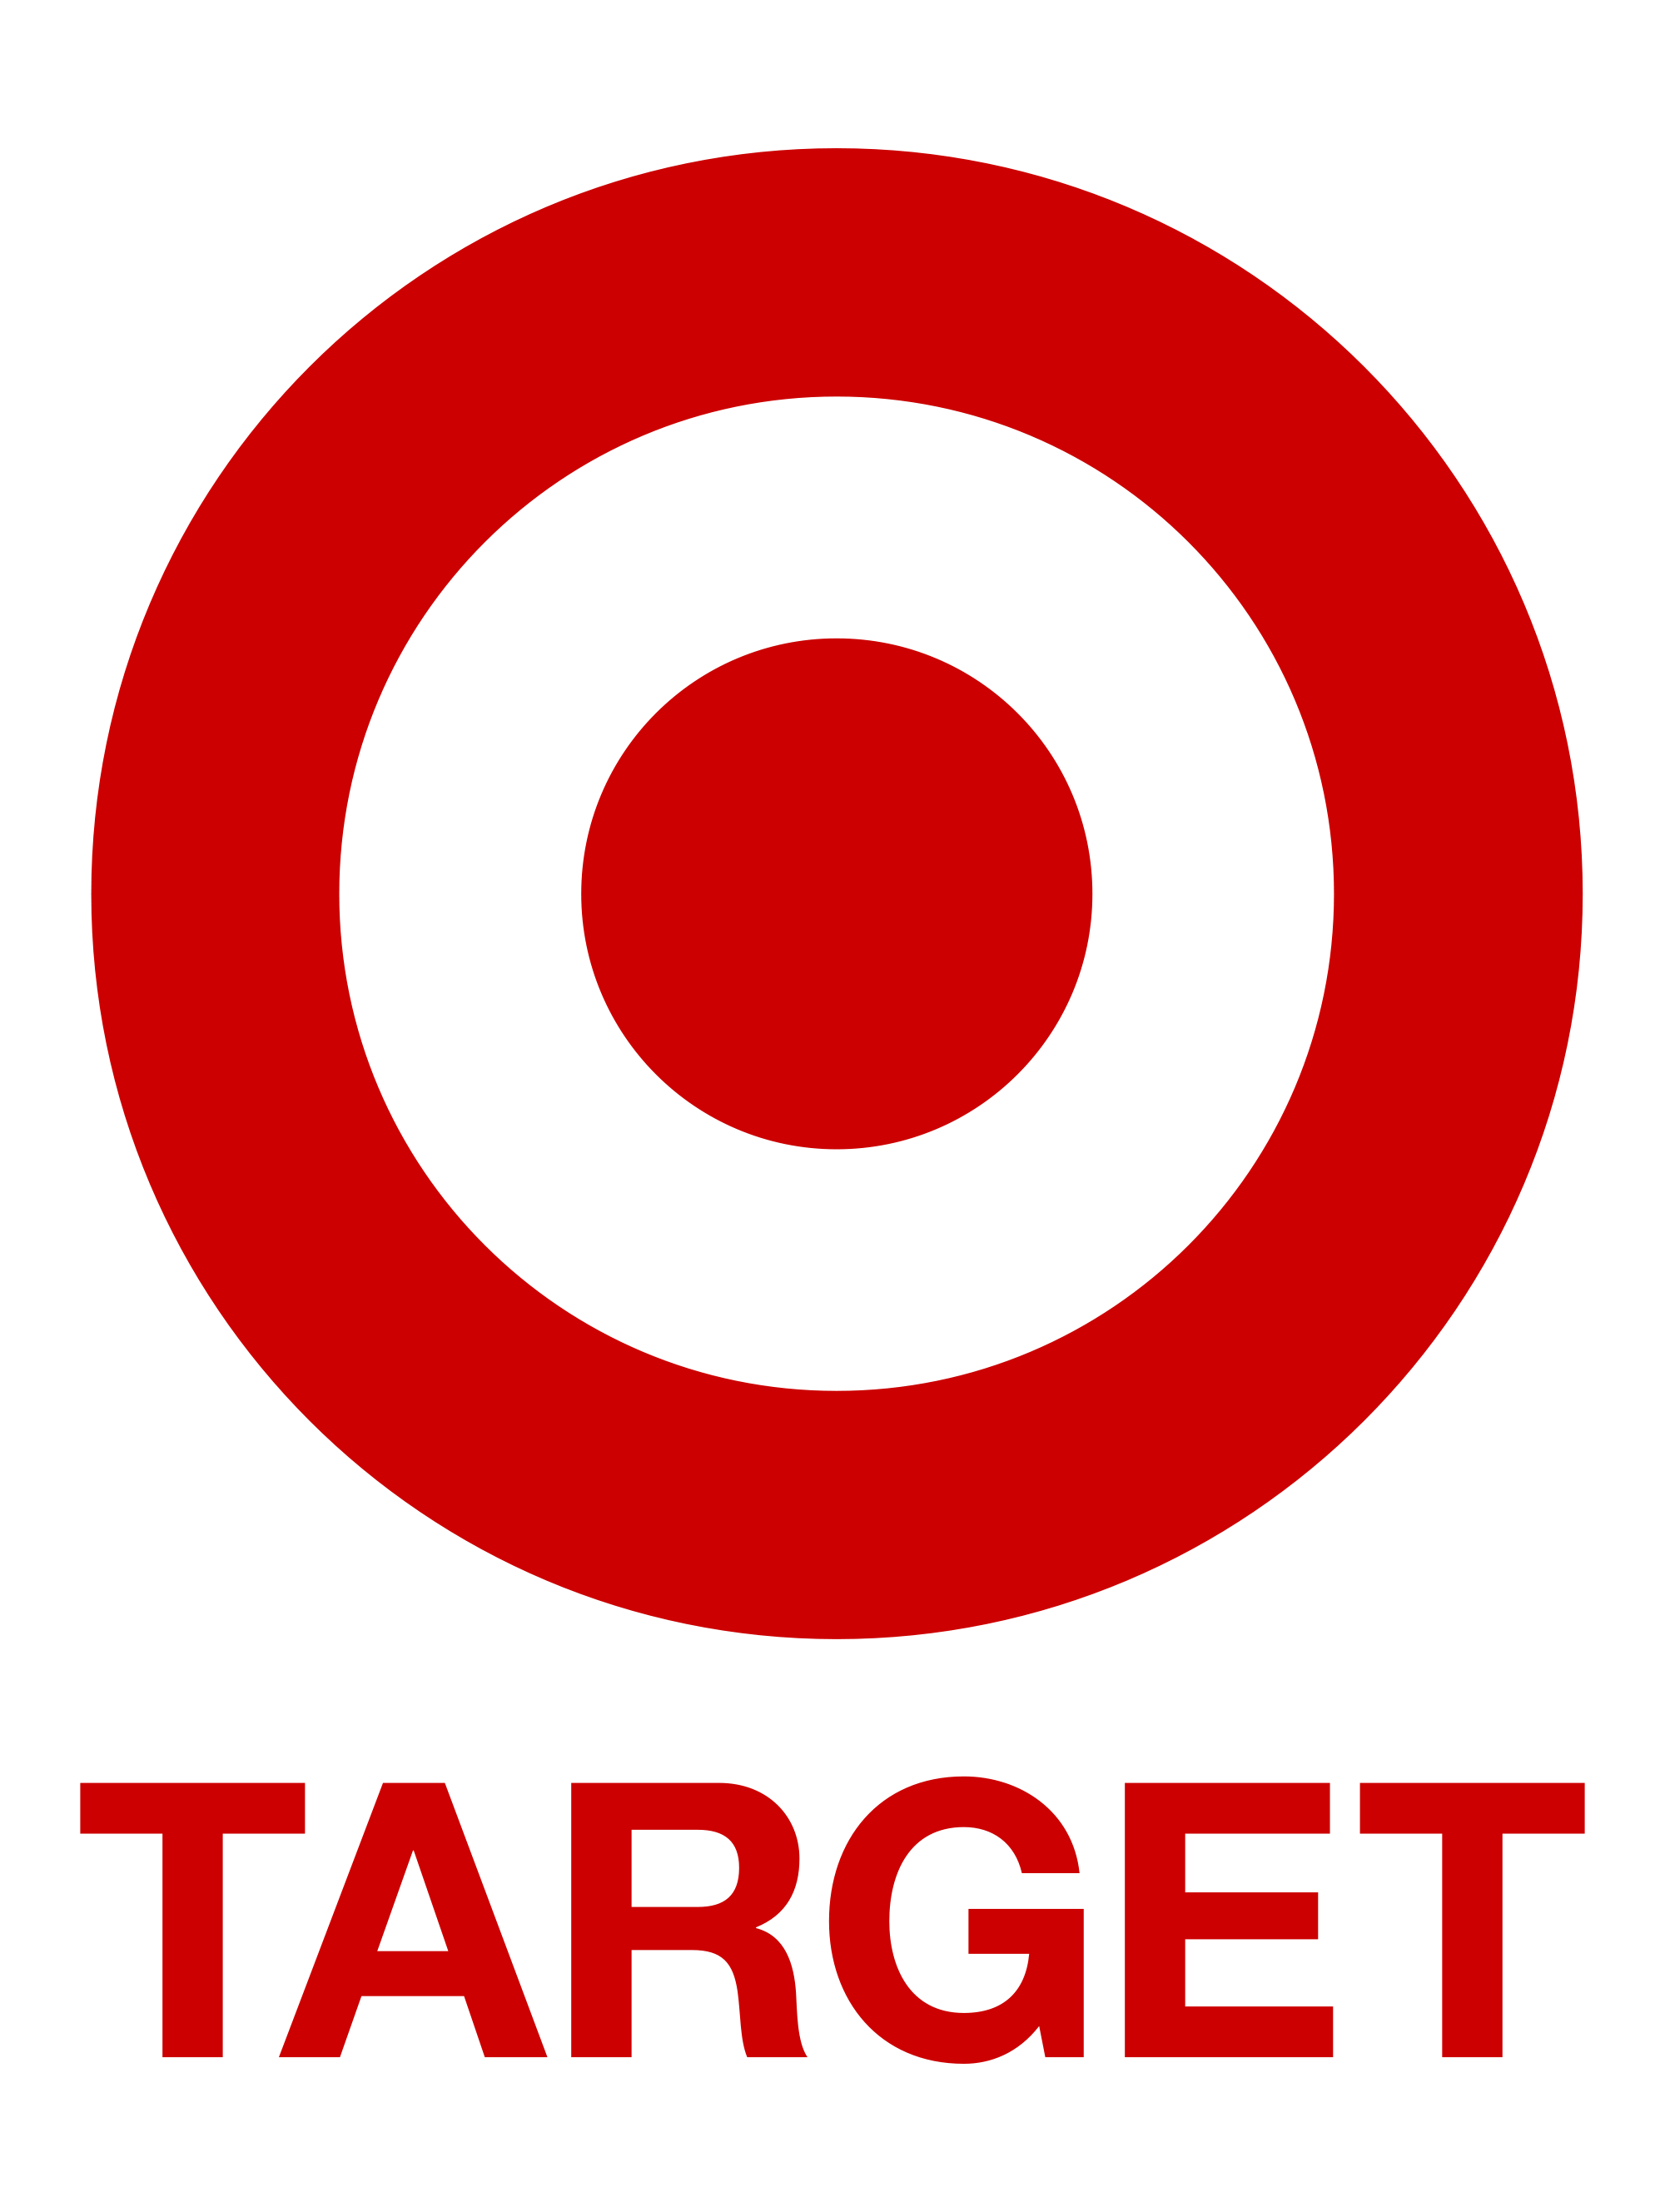 target b2g1 games